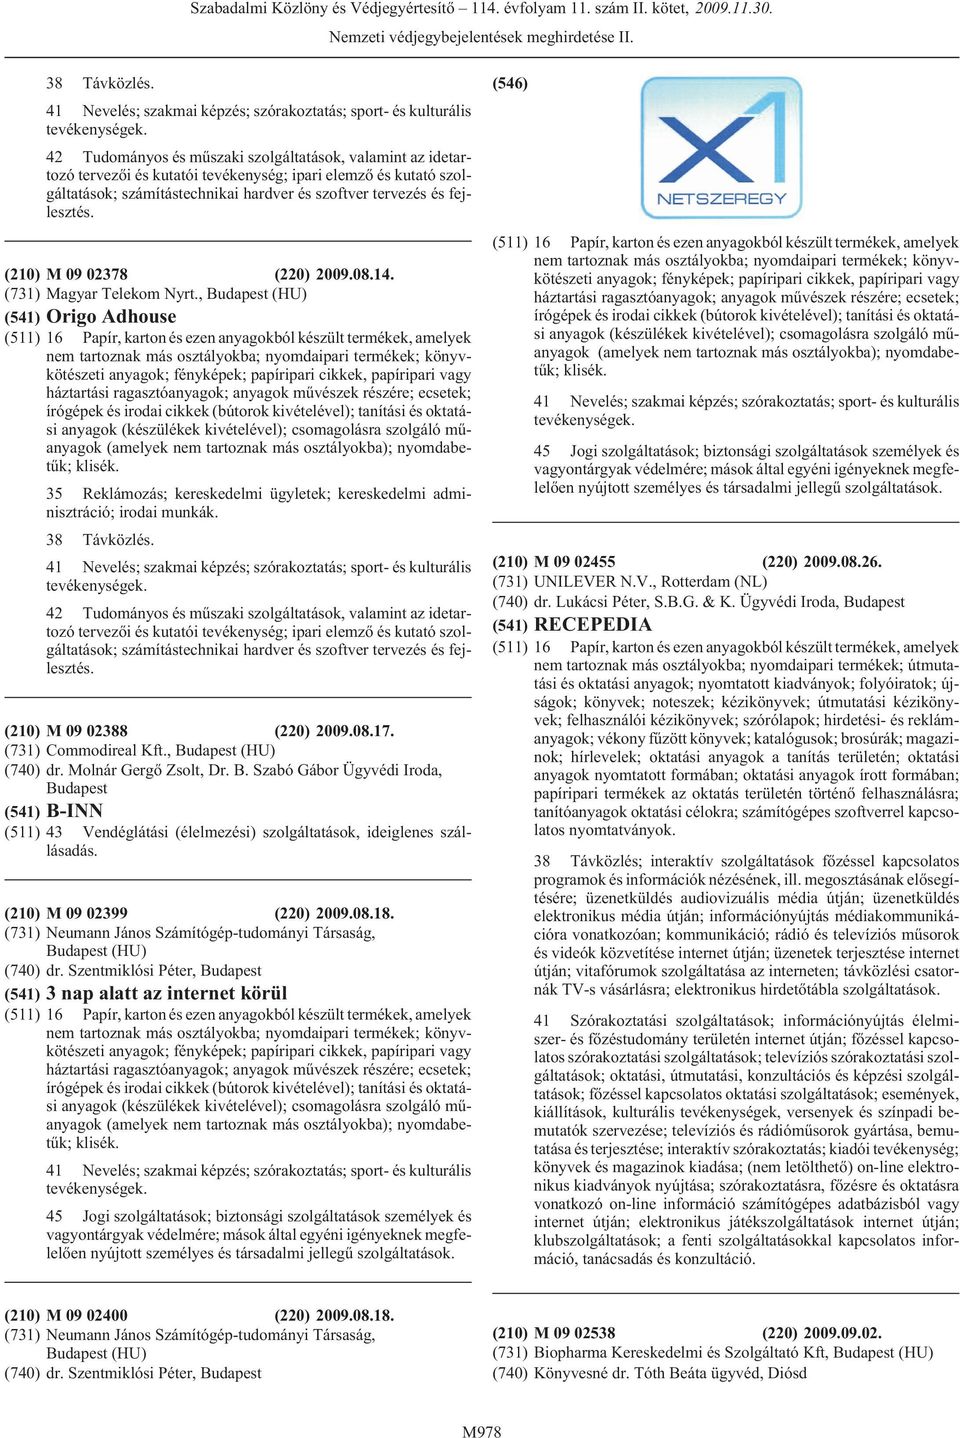 Szabó Gábor Ügyvédi Iroda, (541) B-INN (511) 43 Vendéglátási (élelmezési) szolgáltatások, ideiglenes szállásadás. (210) M 09 02399 (220) 2009.08.18.